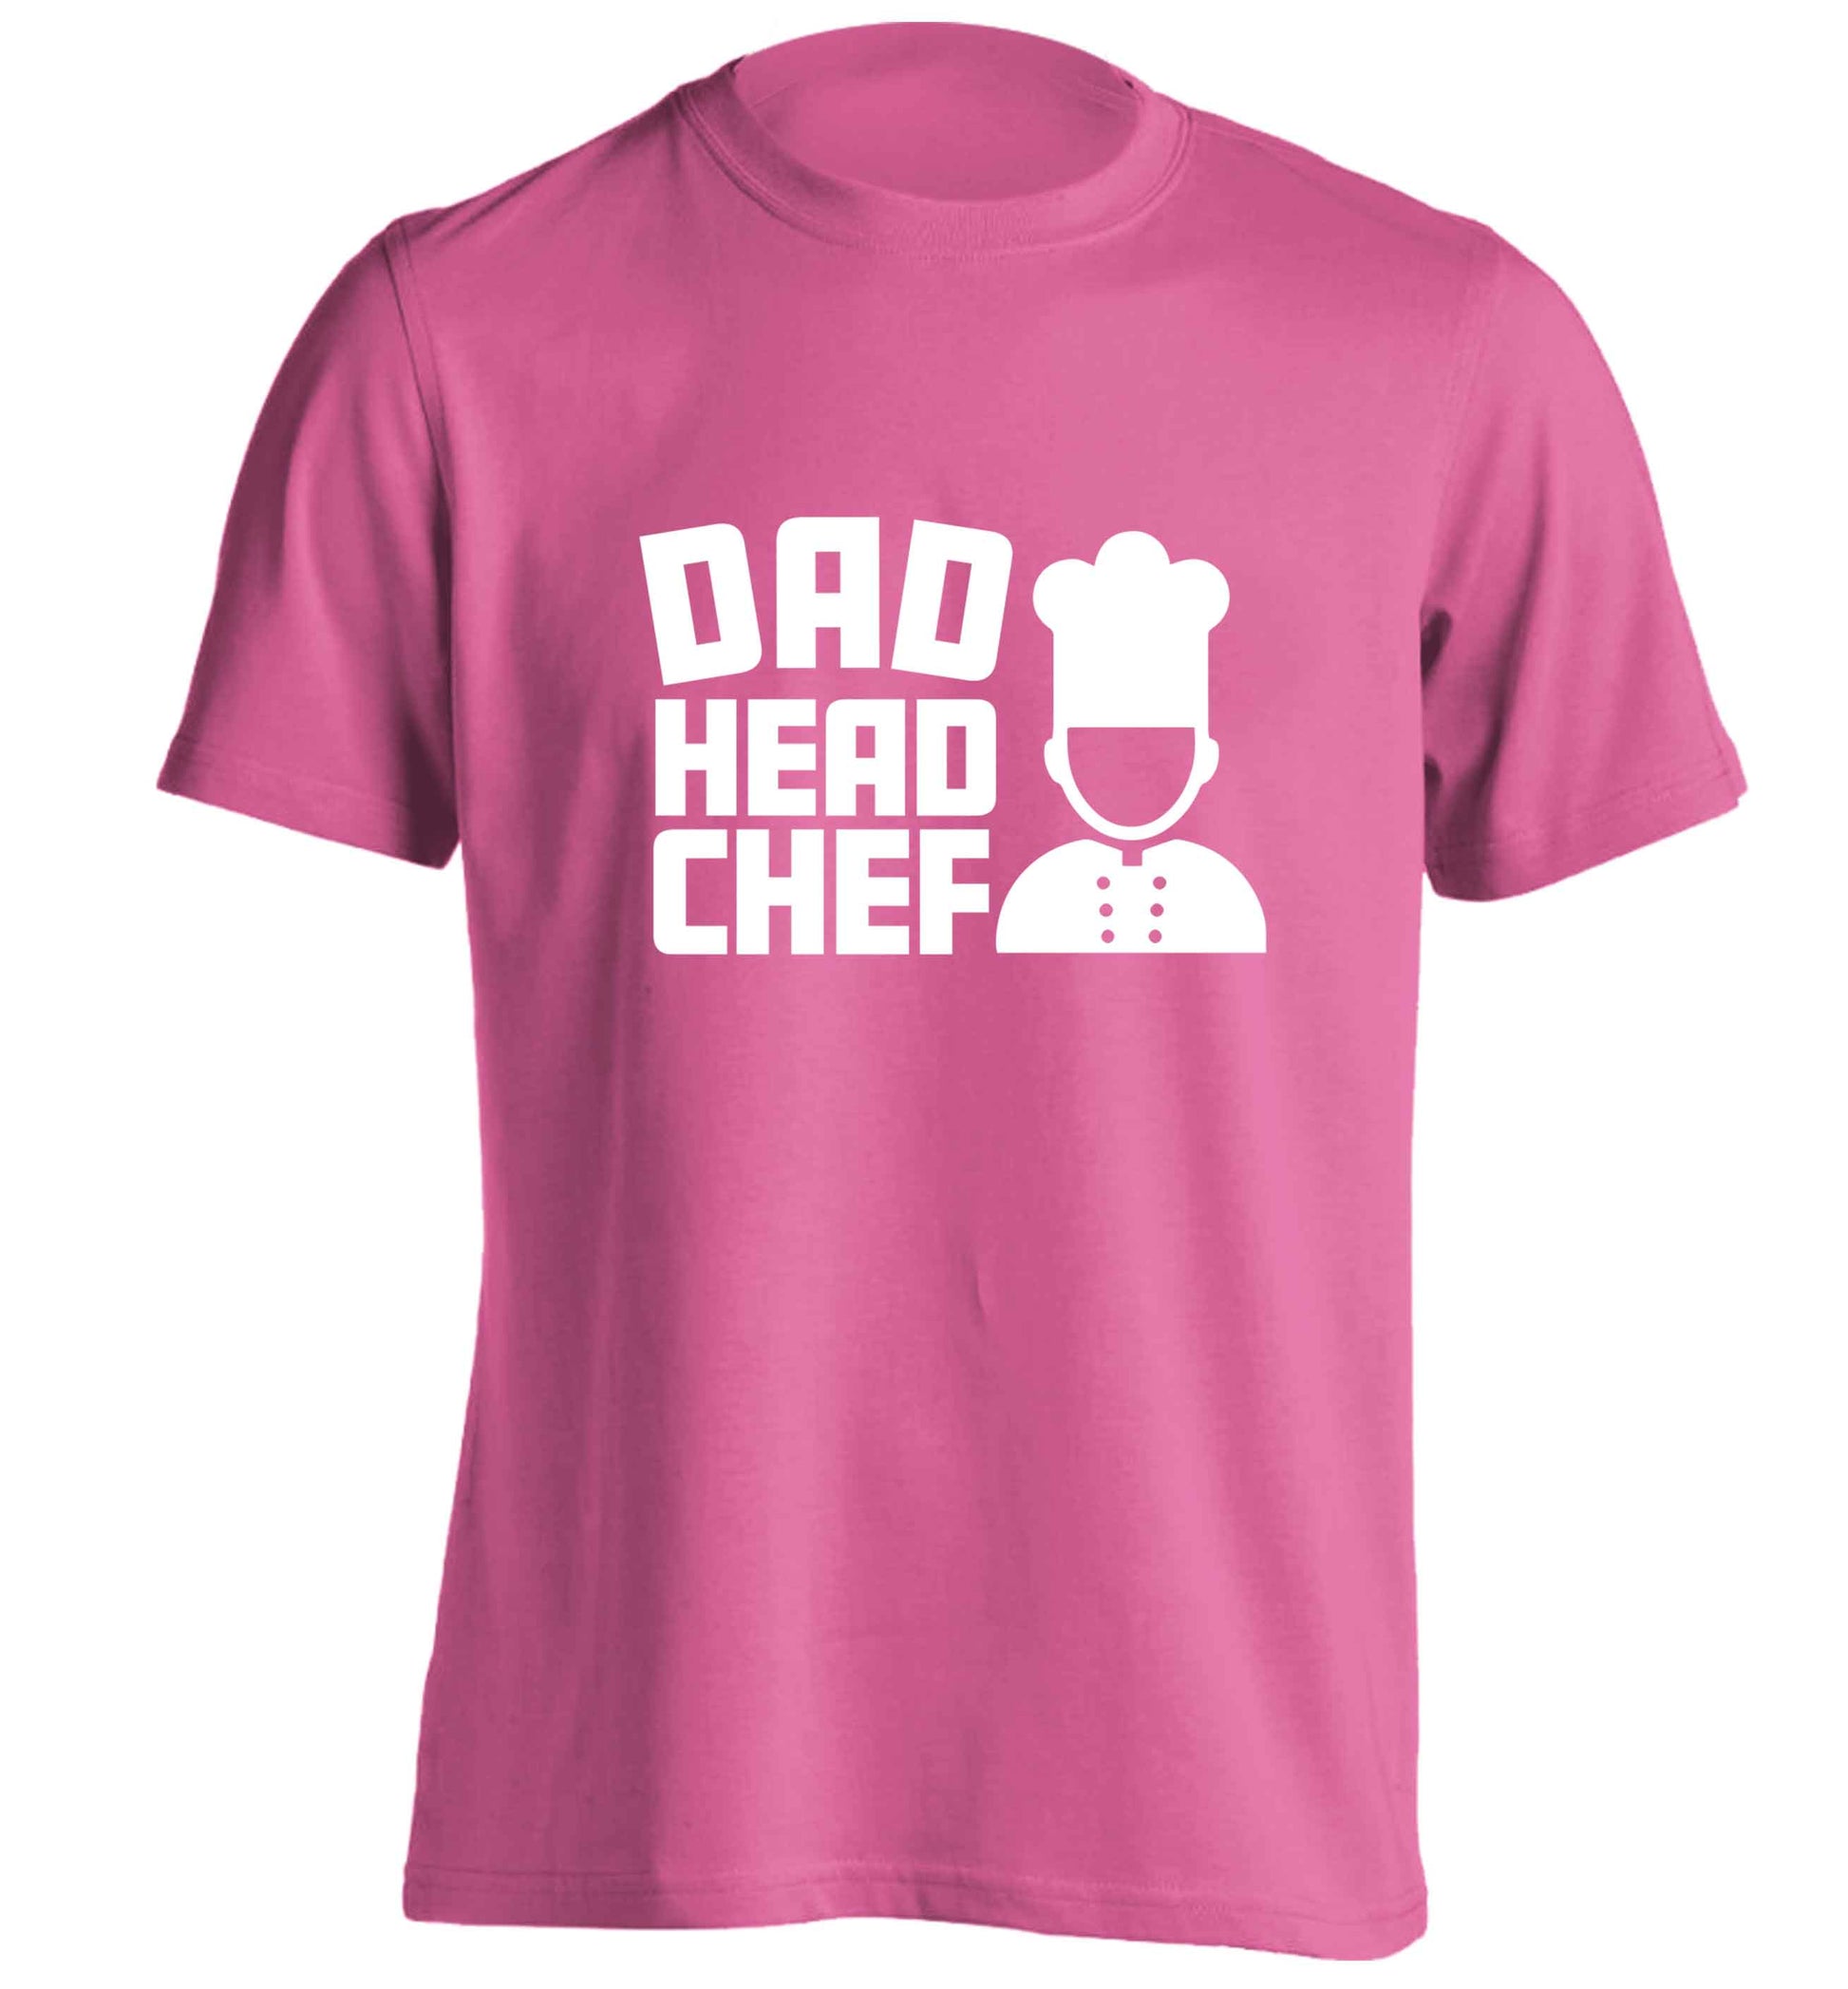 Dad head chef adults unisex pink Tshirt 2XL